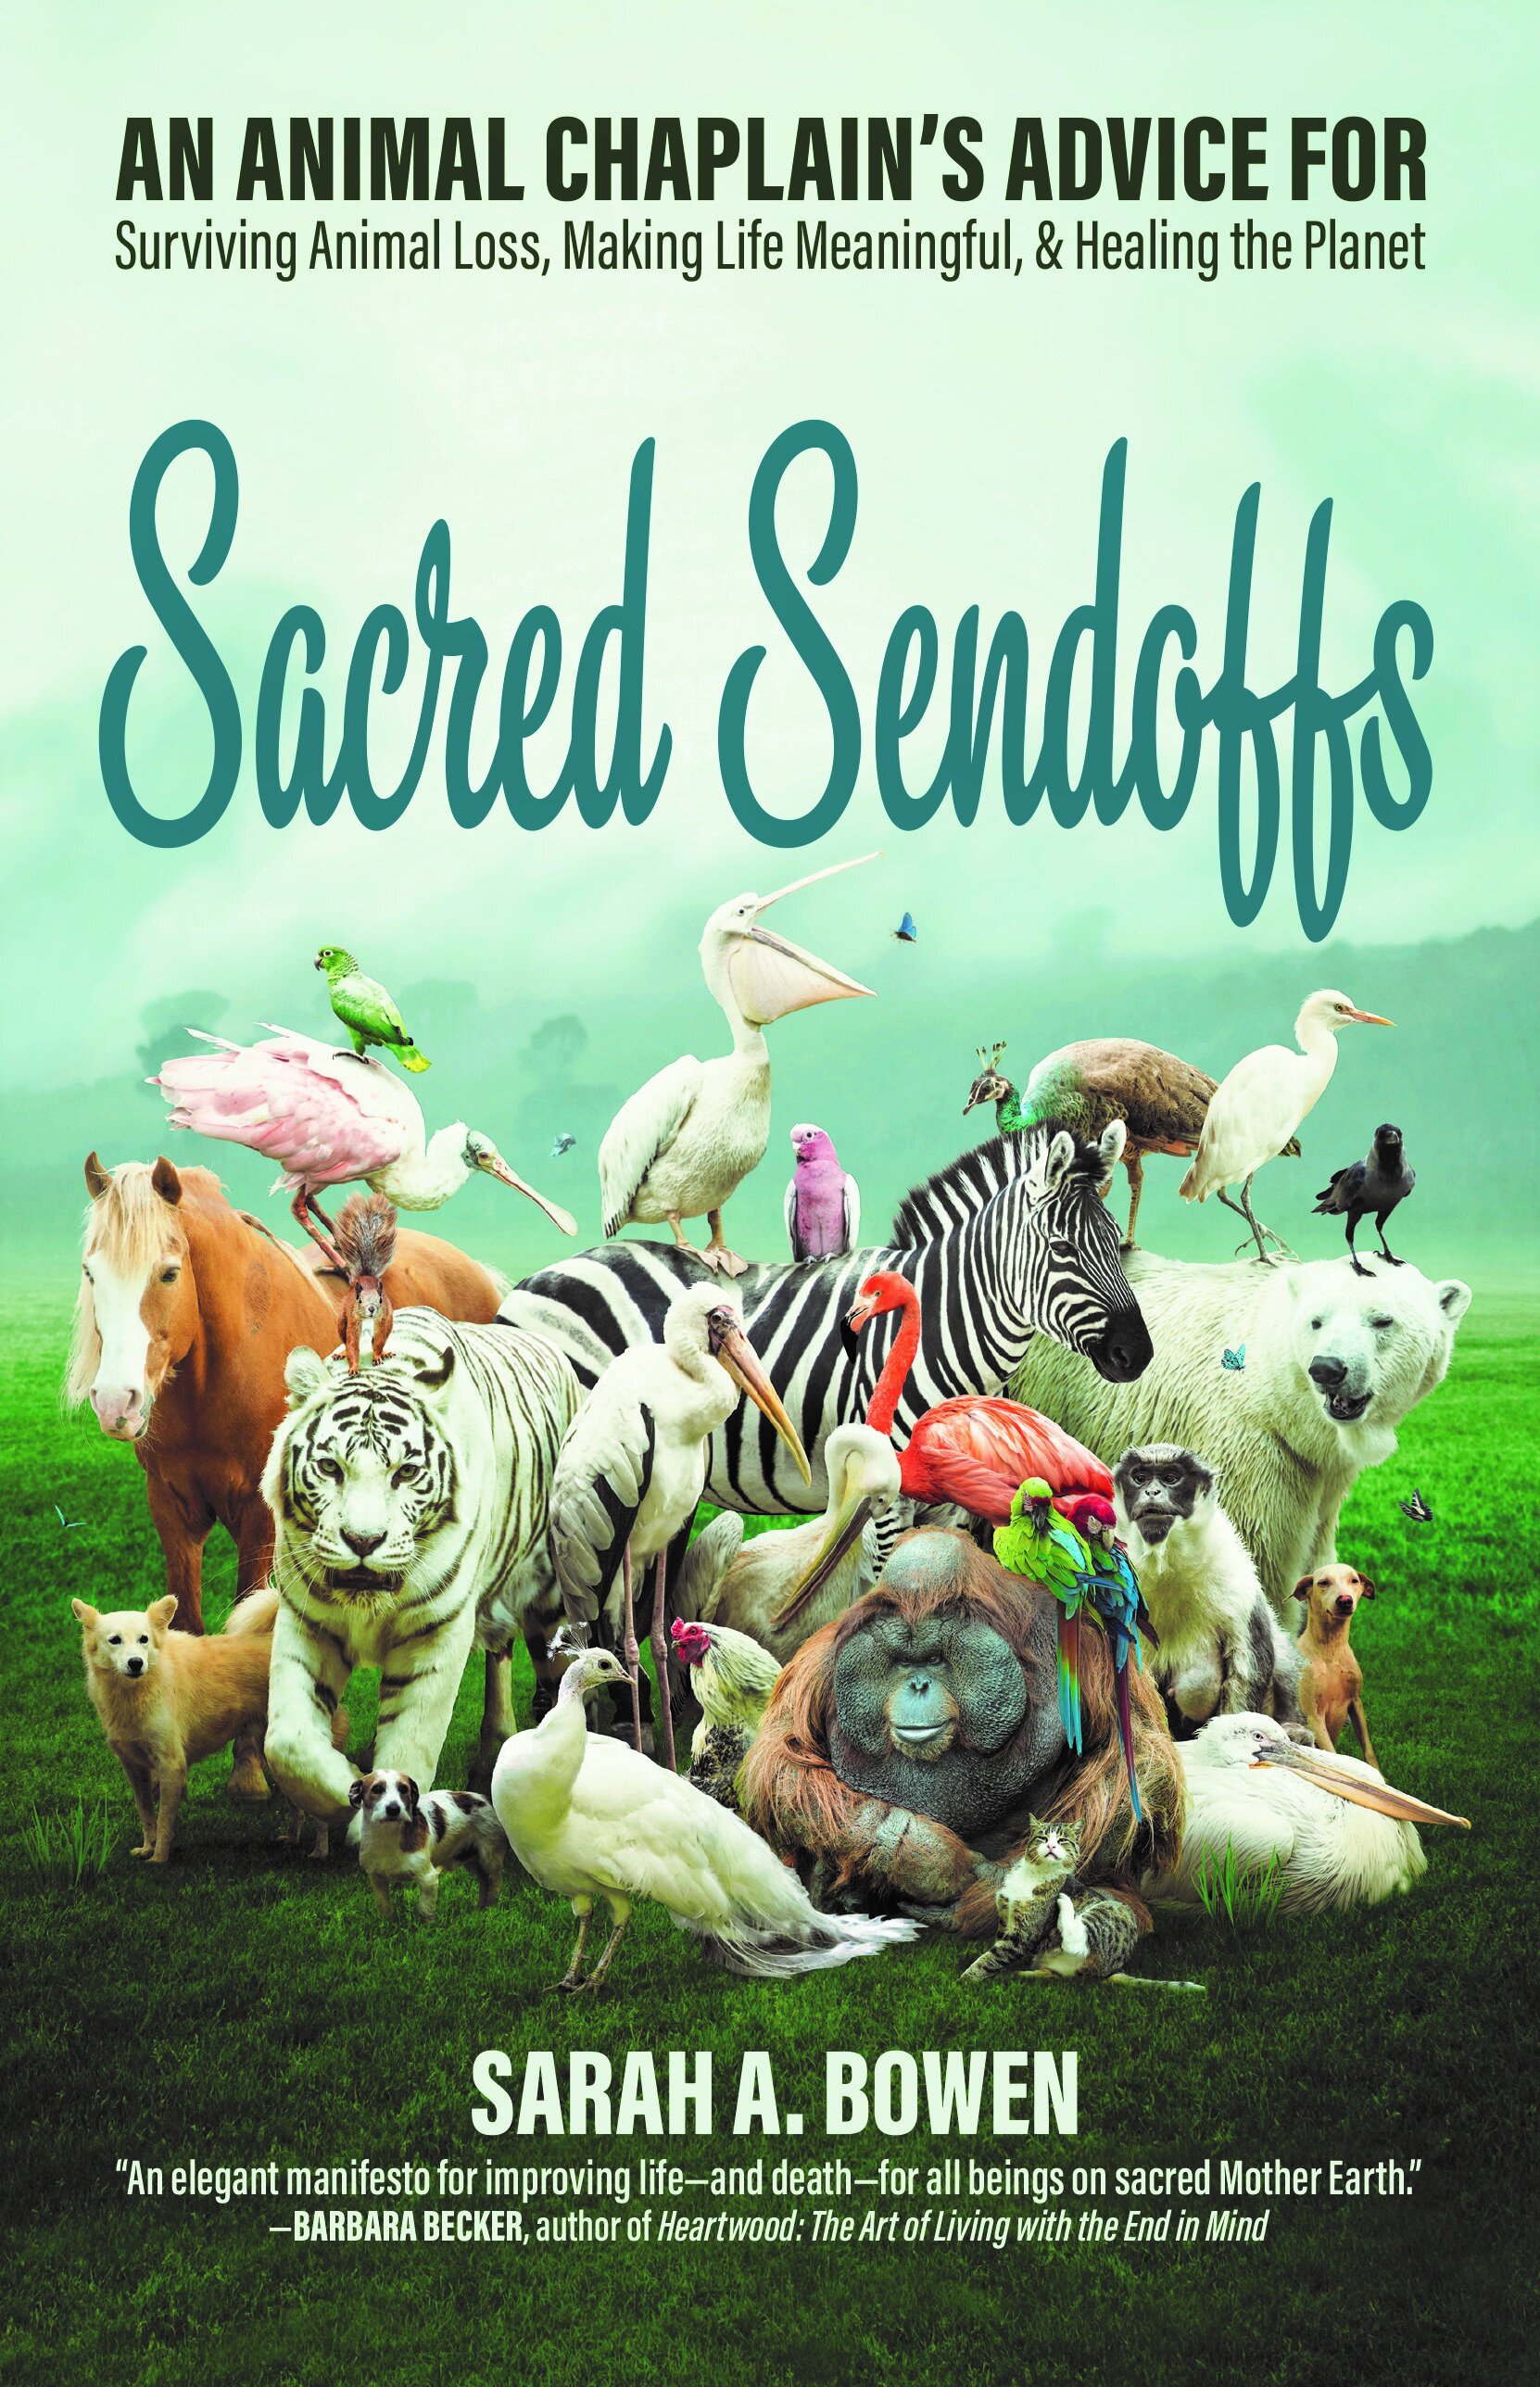 SacredSendoffs book cover.jpg